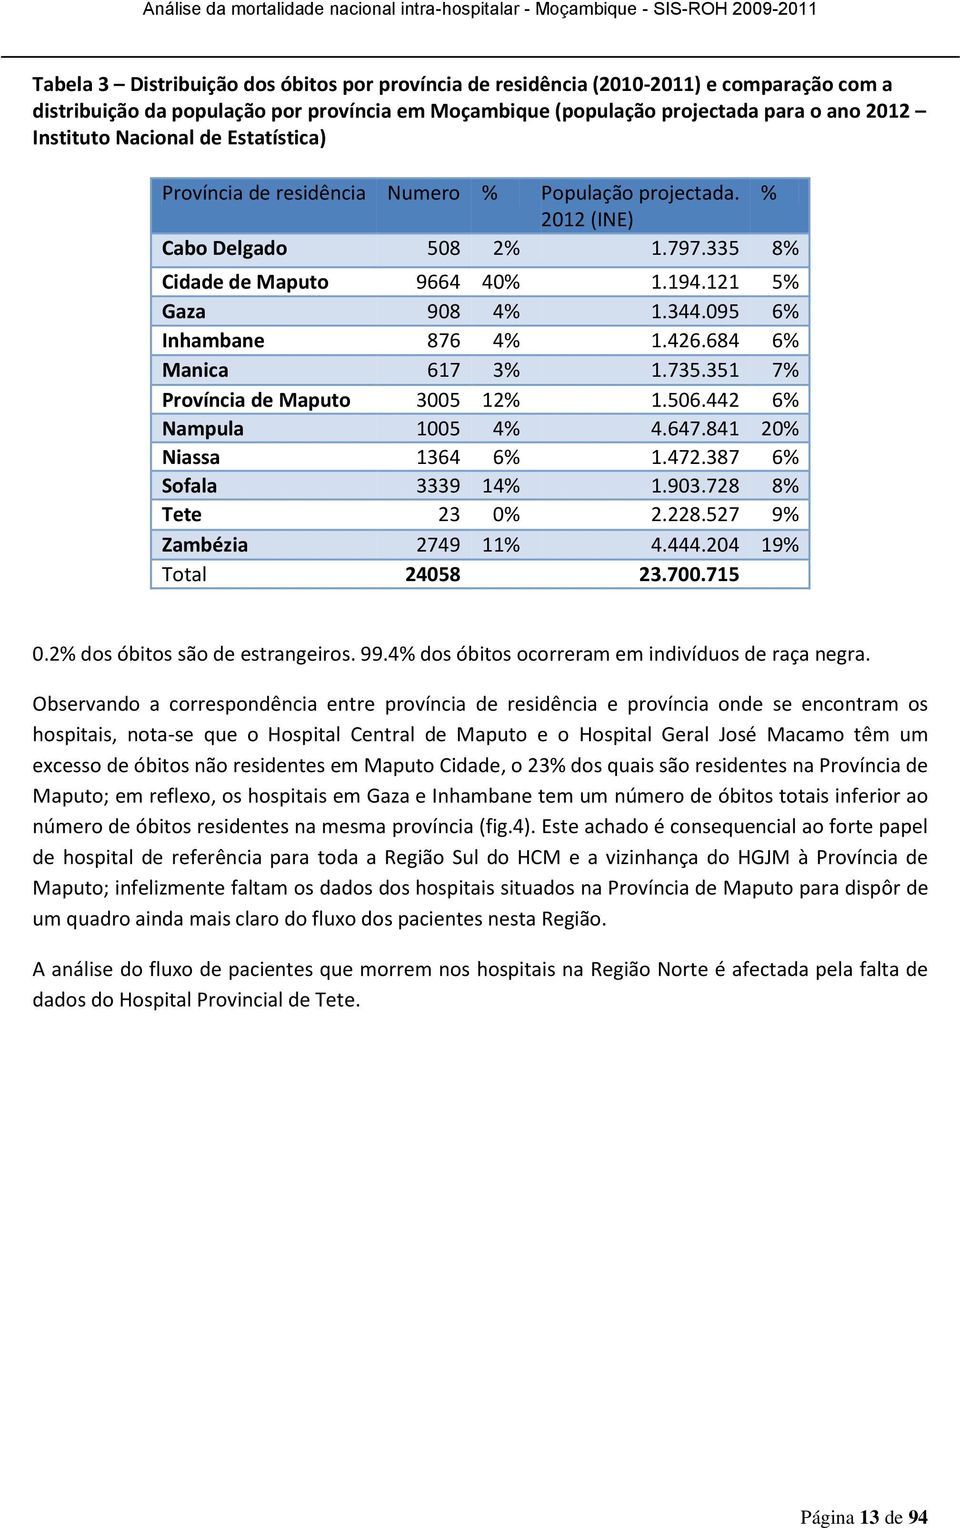 095 6% Inhambane 876 4% 1.426.684 6% Manica 617 3% 1.735.351 7% Província de Maputo 3005 12% 1.506.442 6% Nampula 1005 4% 4.647.841 20% Niassa 1364 6% 1.472.387 6% Sofala 3339 14% 1.903.